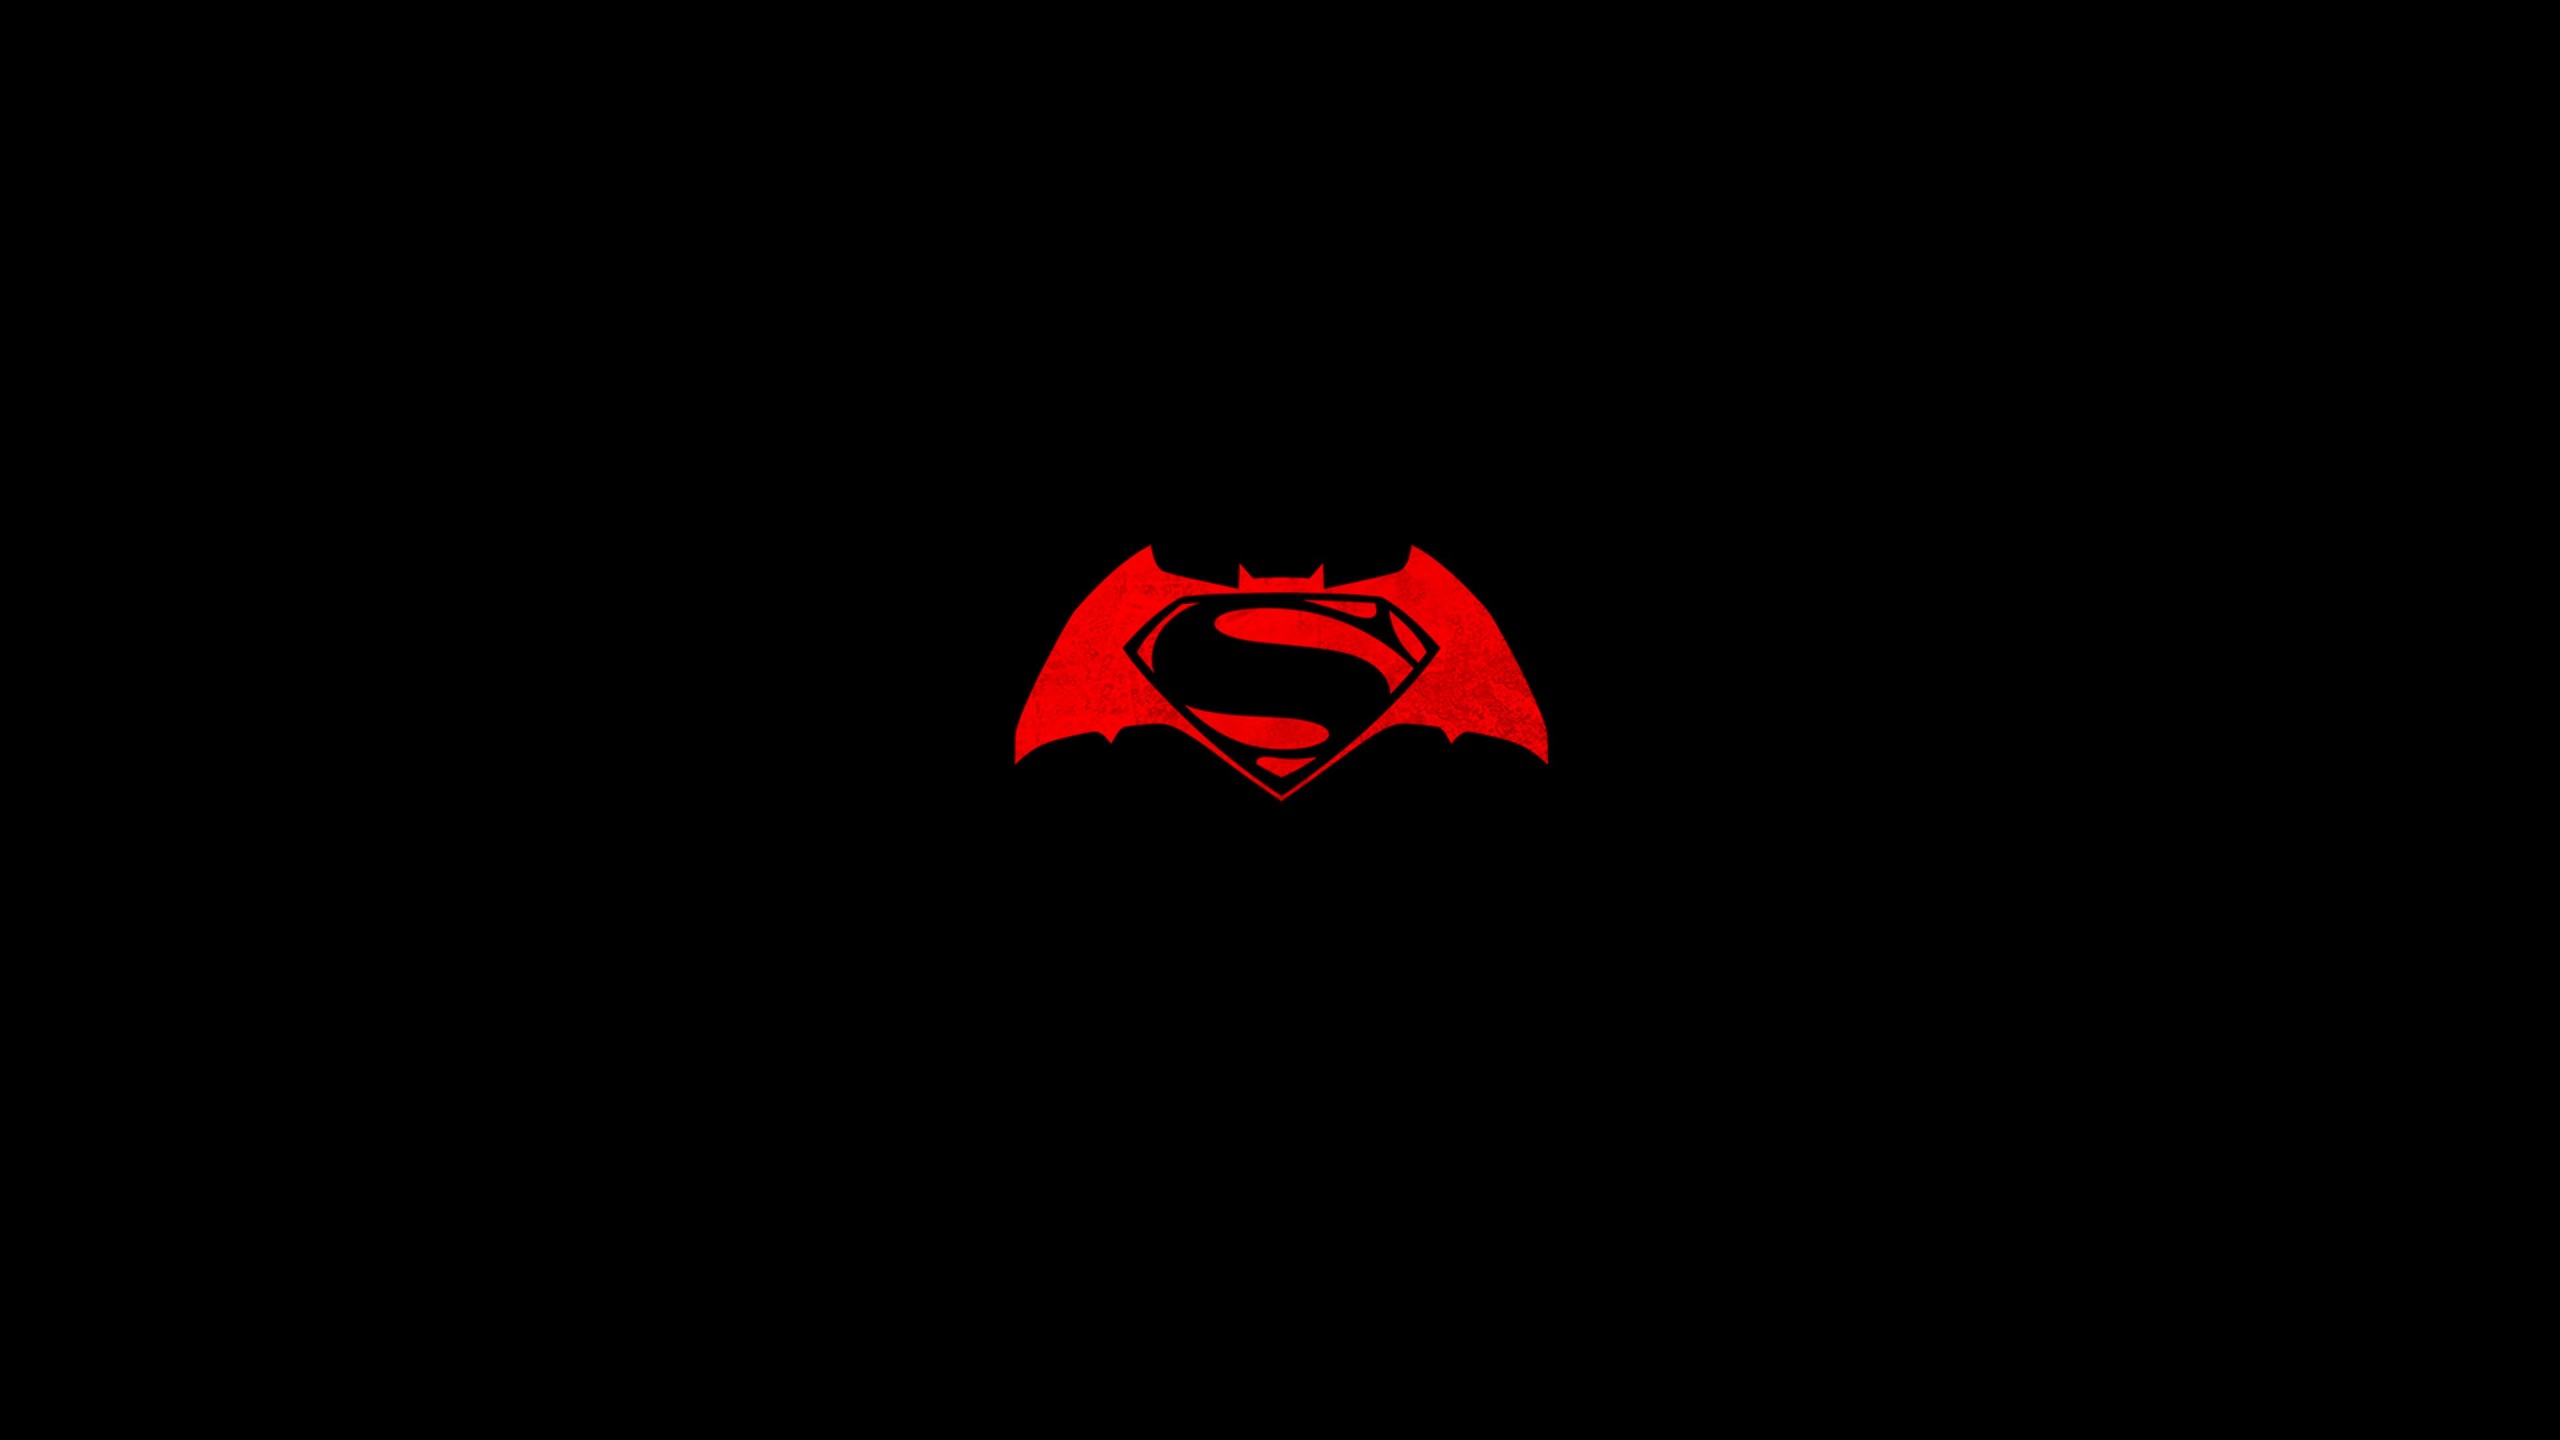 Batman v Superman logo Wallpaper for Social Media YouTube Channel Art